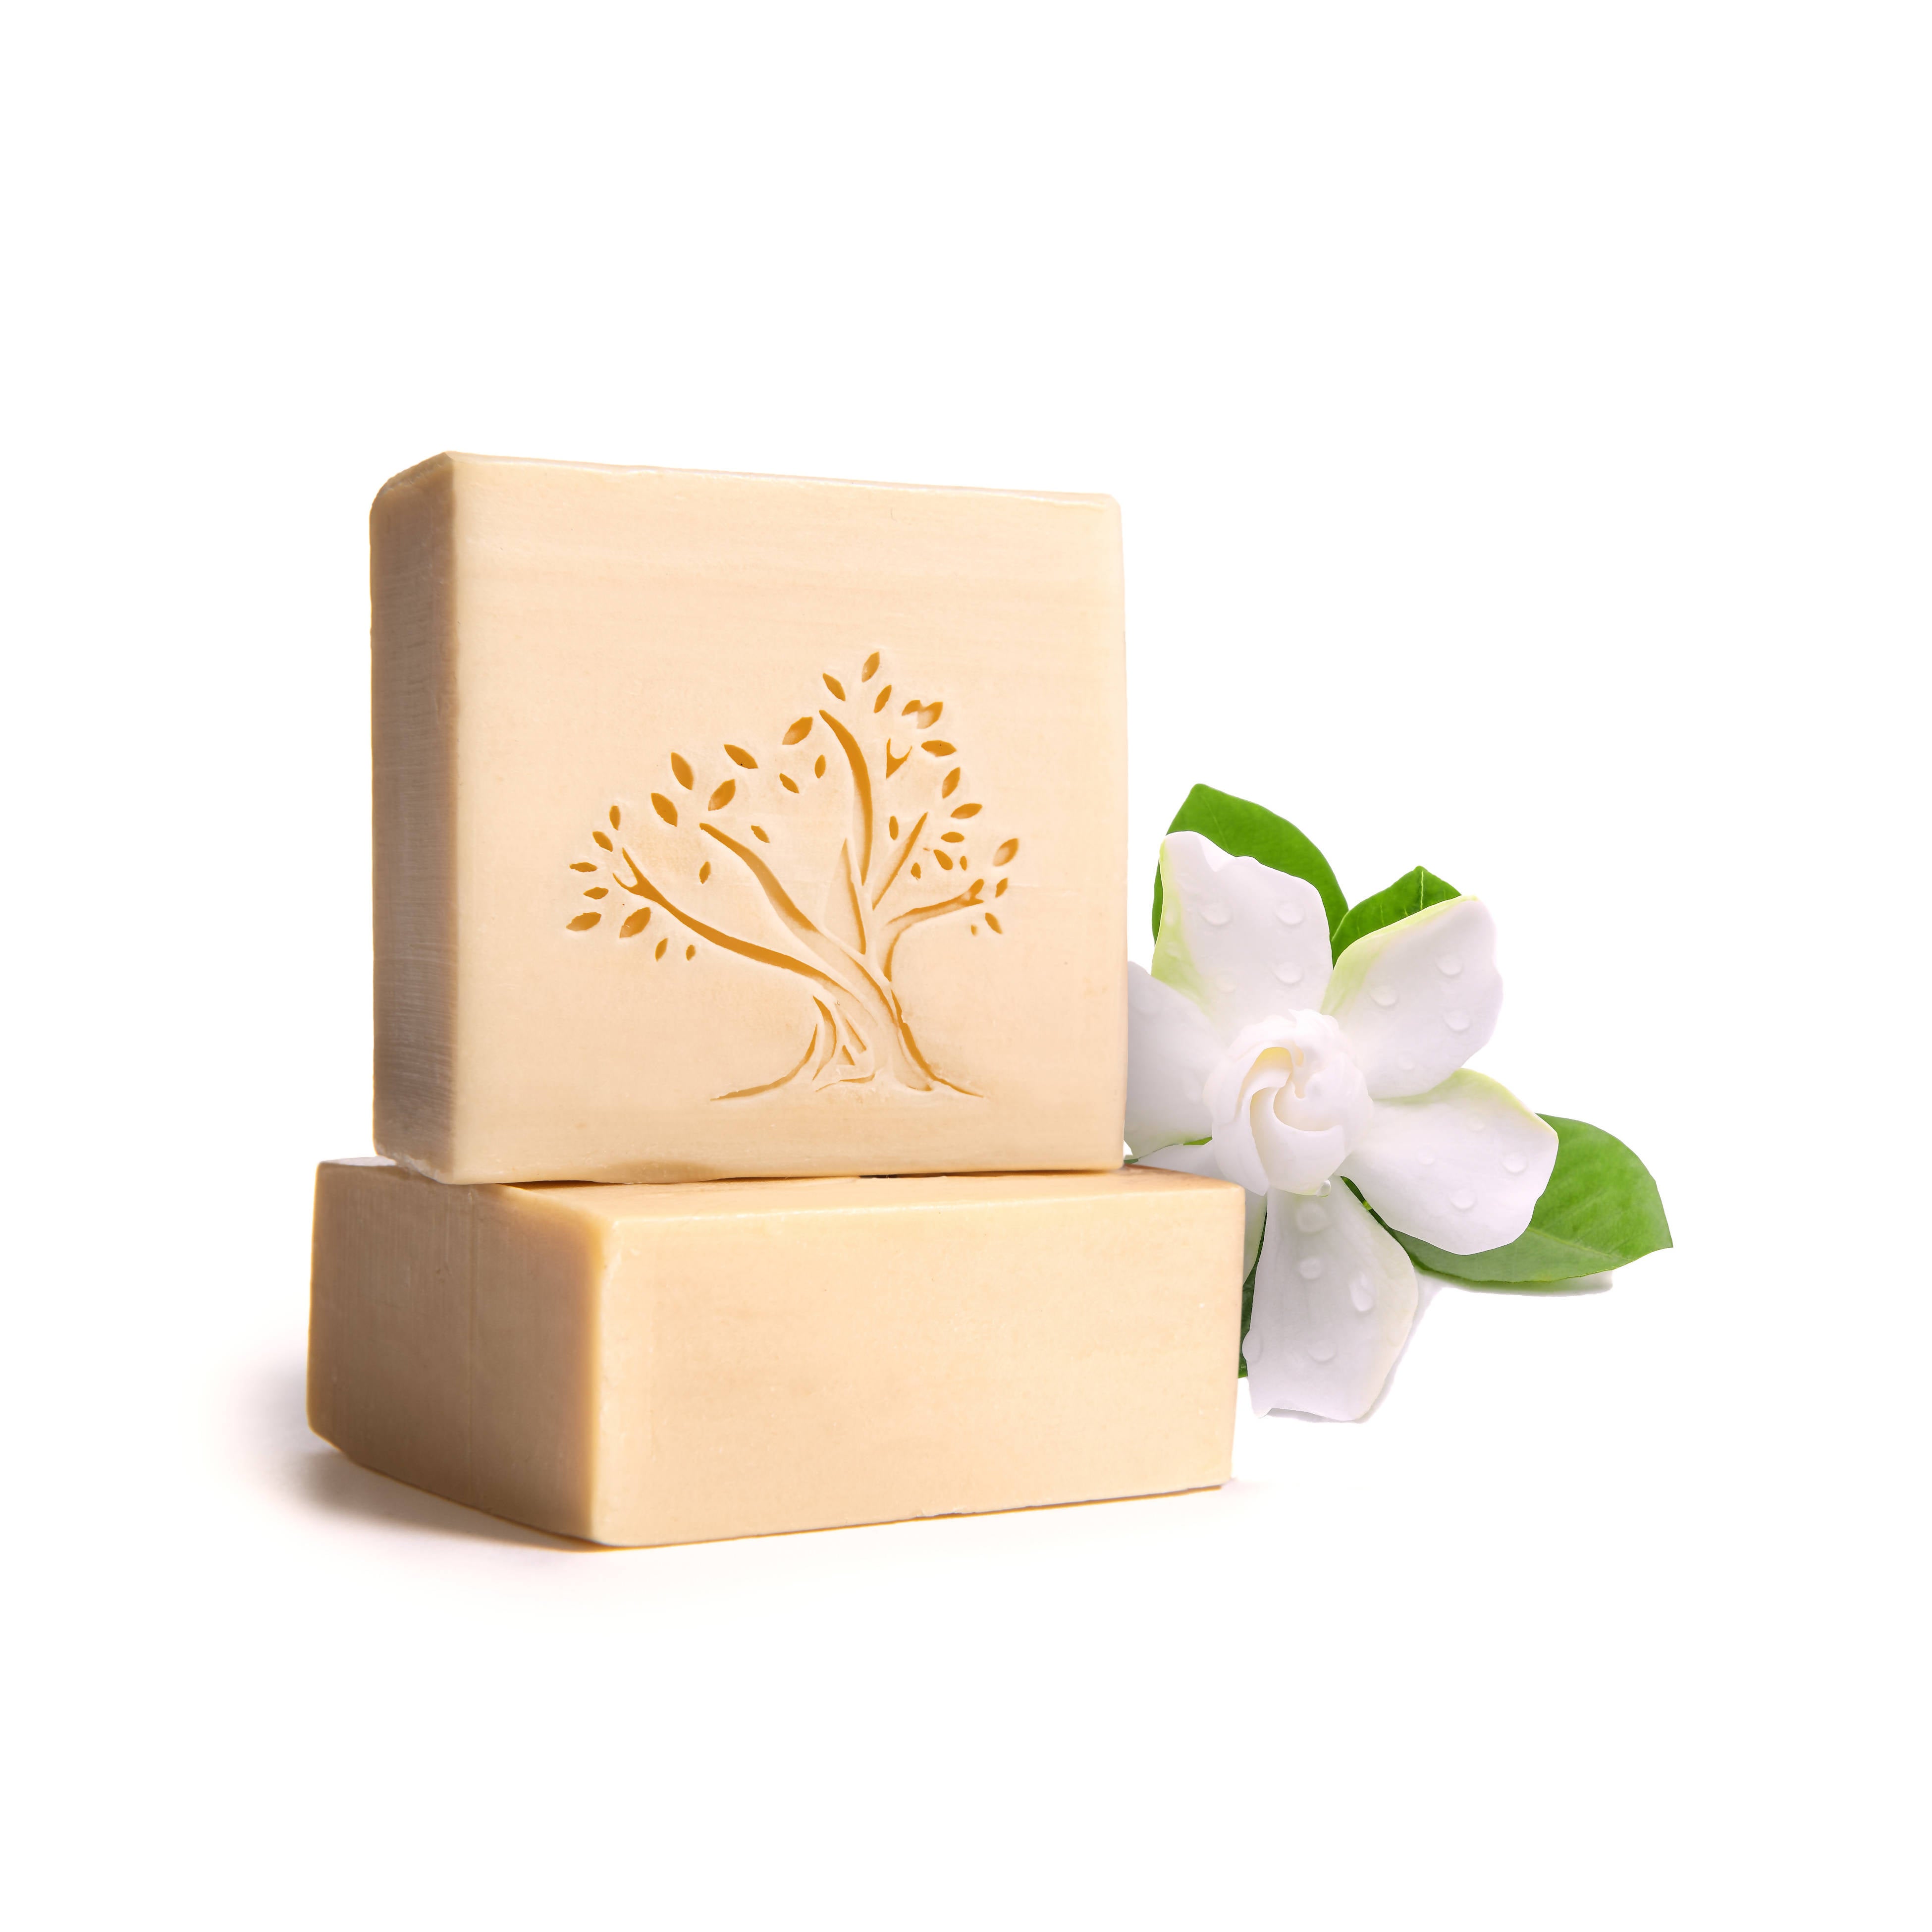 Gardenia essential oil essences virgin olive soothing moisturizing soap bath bar shampoo bathing Aleppo Lebanese